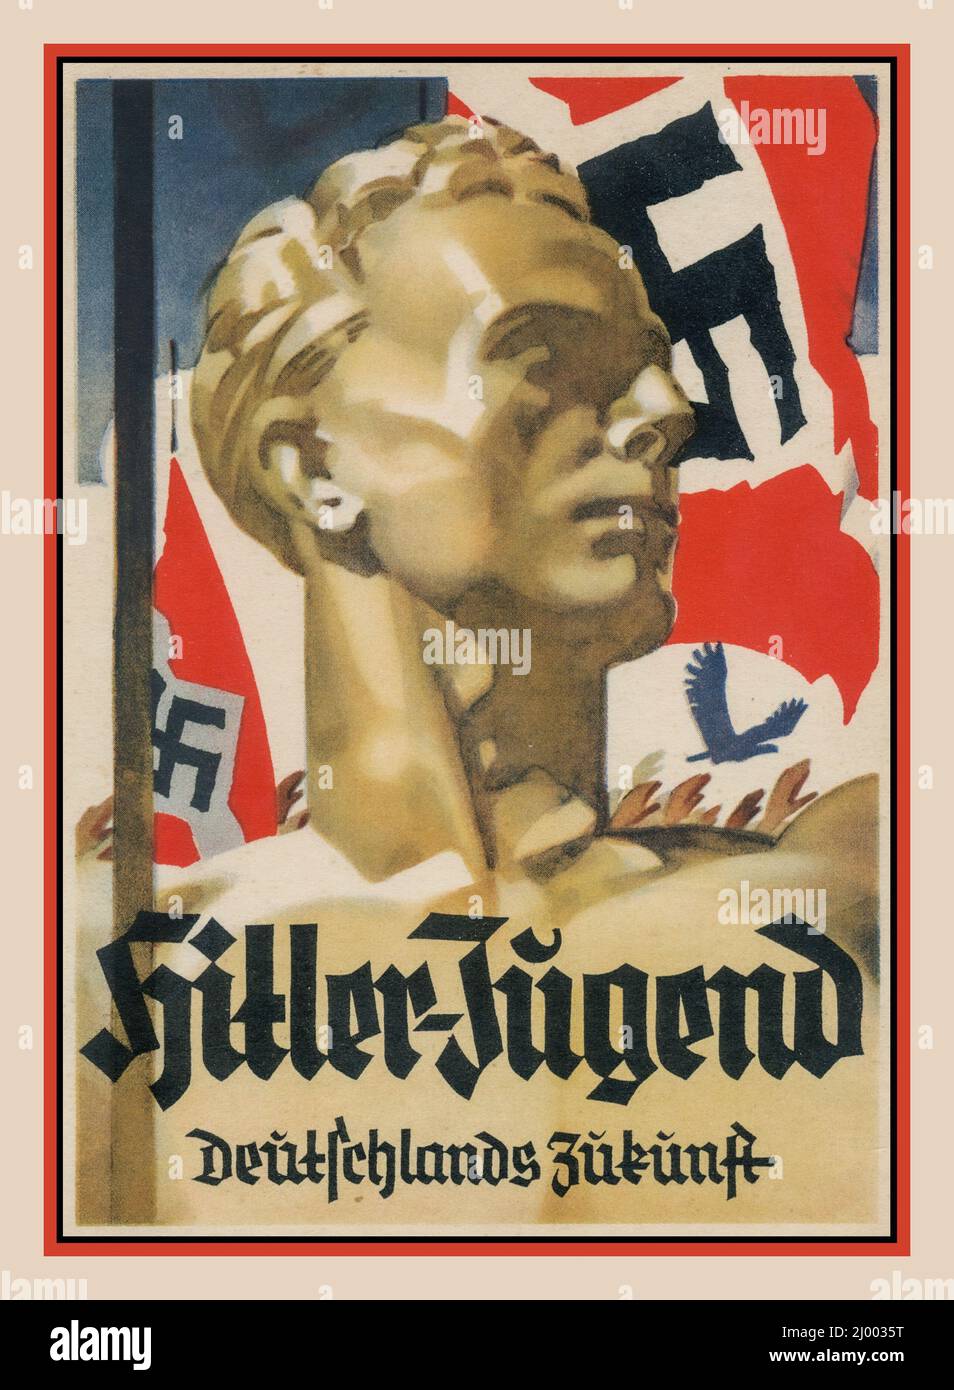 Nazi Hitler-Jugend 1930s Nazi Deutschland Hitler Jugend Propagandakarte Plakat mit Hakenkreuzflagge und dem Titel HITLER-JUGEND Deutschlands Zukunft. Die blonde, arianische Jugend war das perfekte Nazi-Deutschland-Ideal Stockfoto